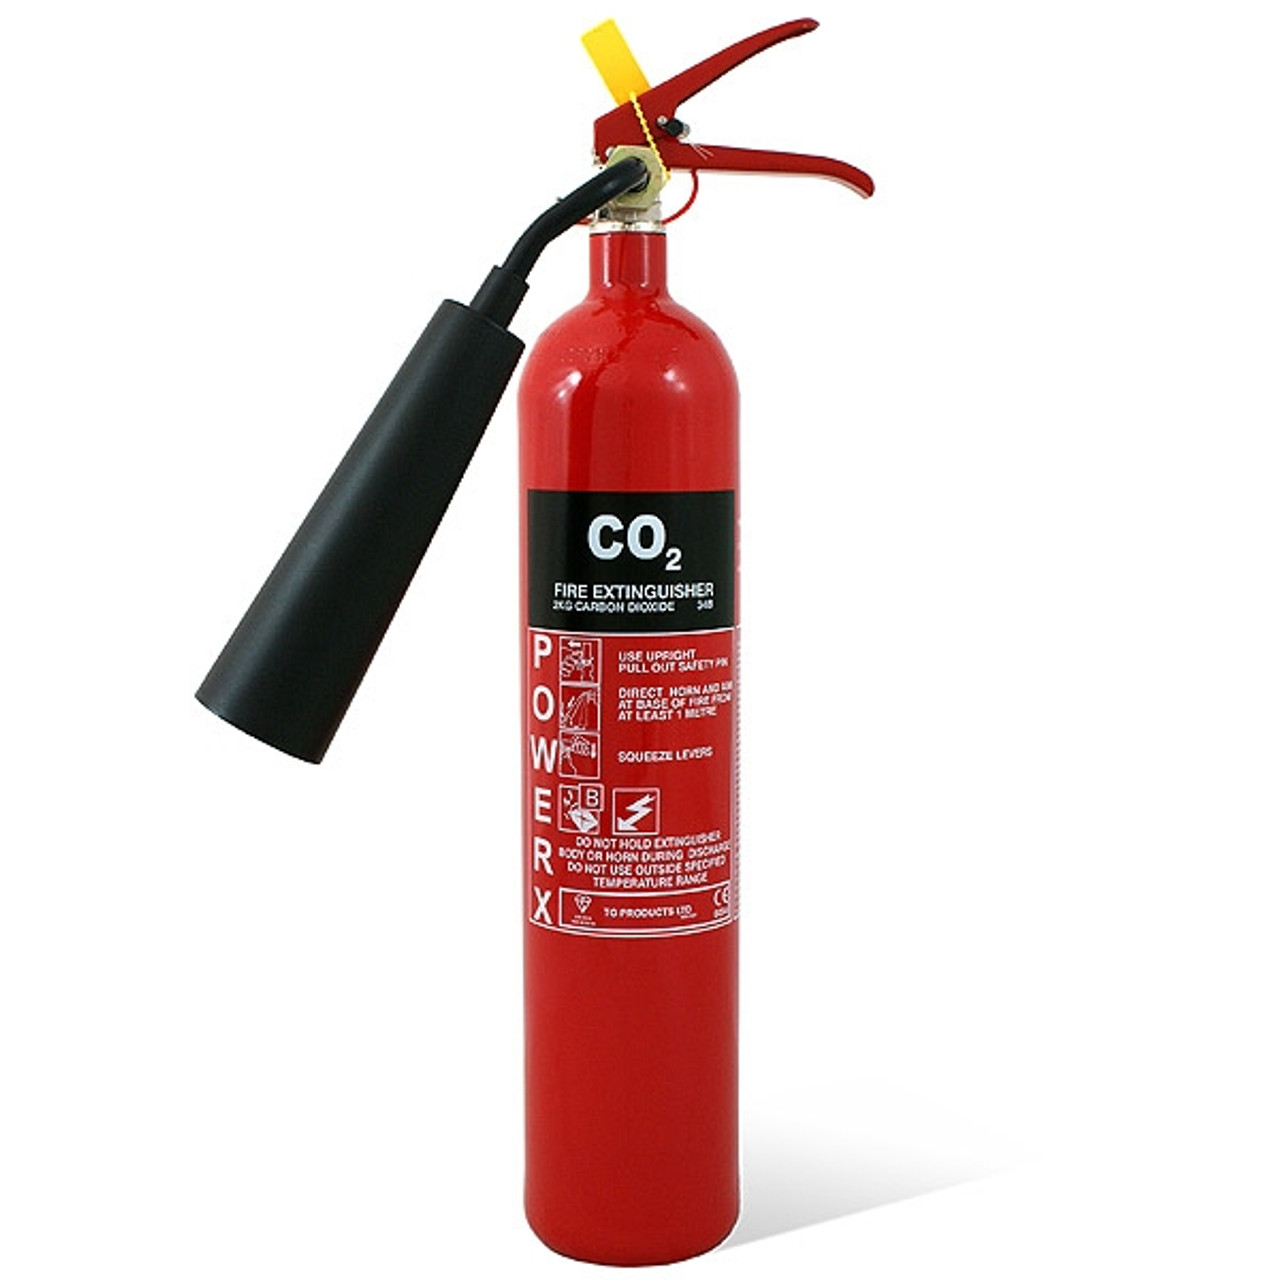 5 kg carbon dioxide fire extinguisher